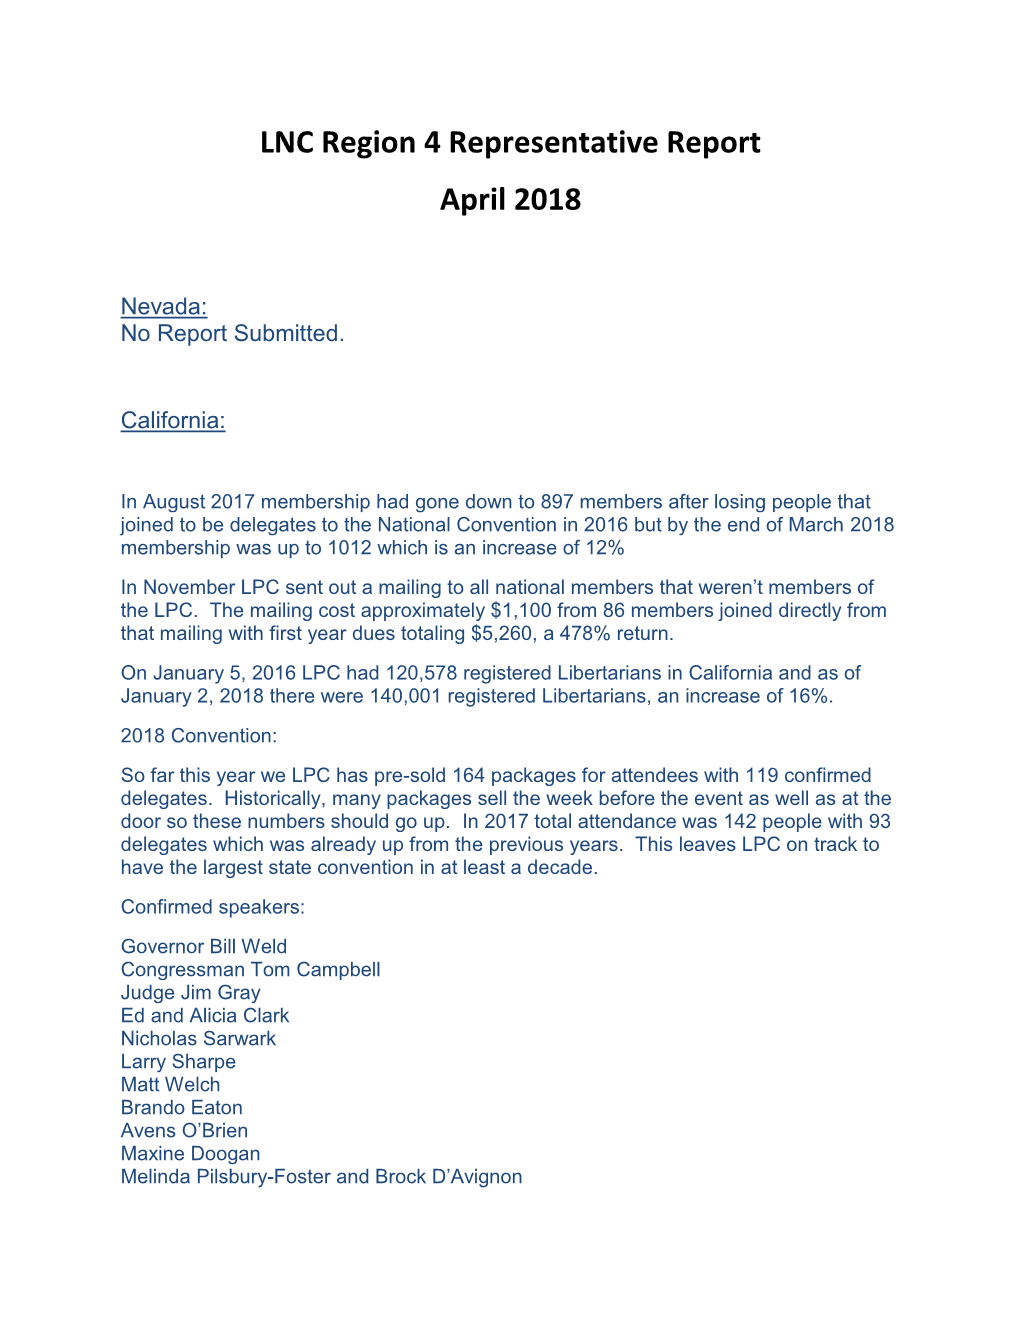 LNC Region 4 Representative Report April 2018